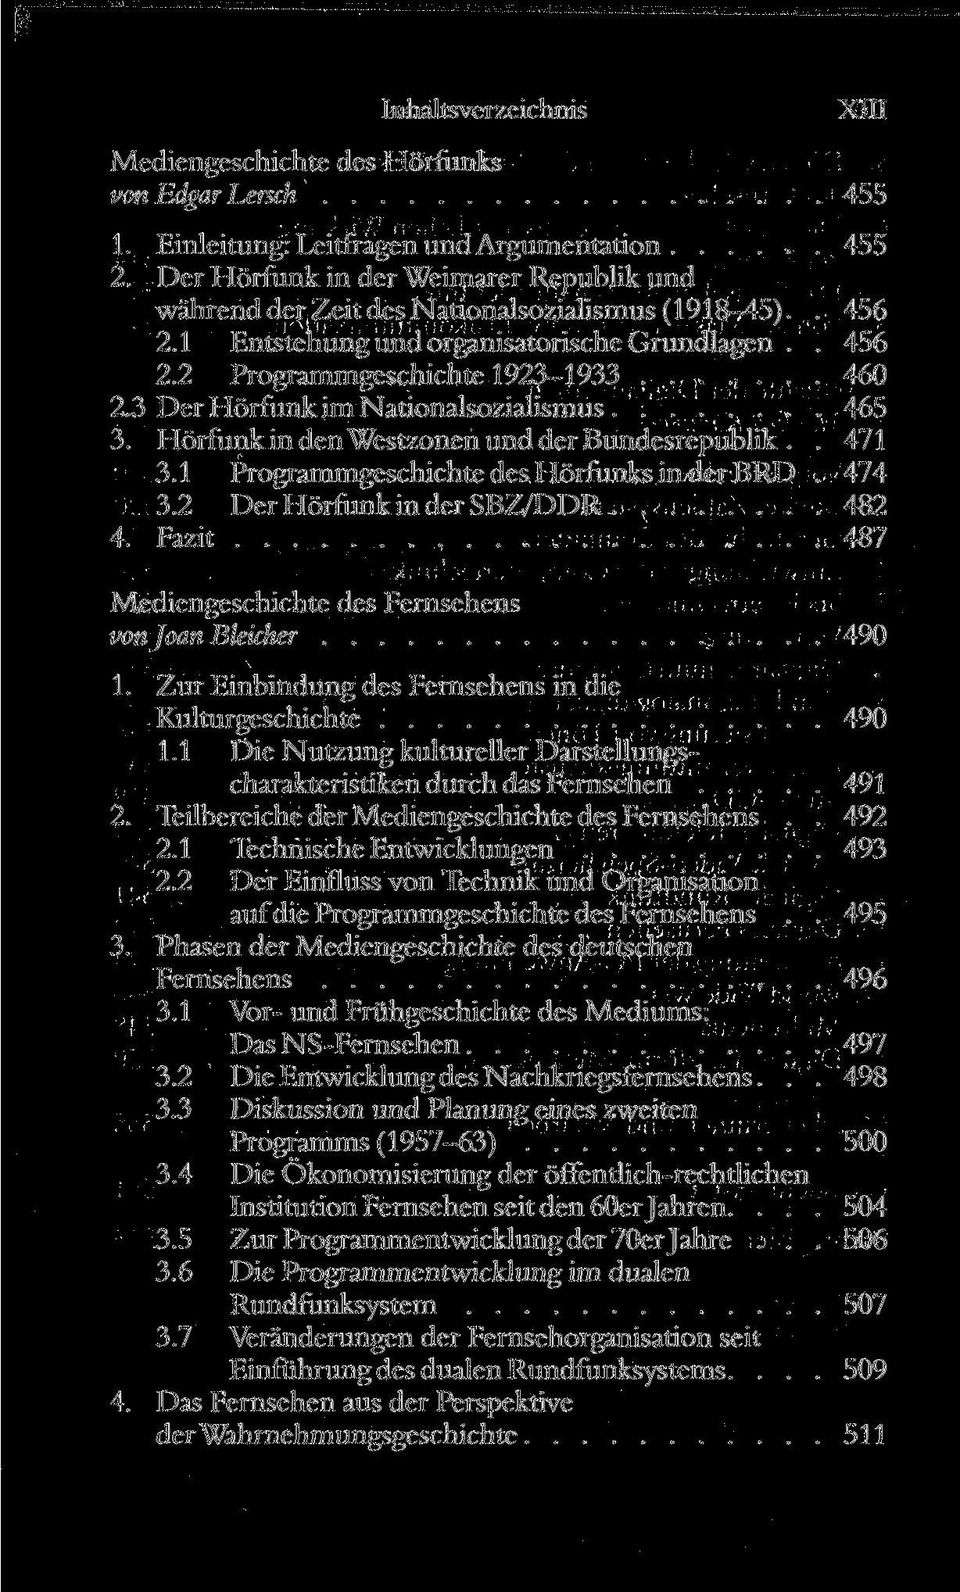 3 Der Hörfunk im Nationalsozialismus 465 3. Hörfunk in den Westzonen und der Bundesrepublik.. 471 3.1 Programmgeschichte des Hörfunks in der BRD. 474 3.2 Der Hörfunk in der SBZ/DDR 482 4.